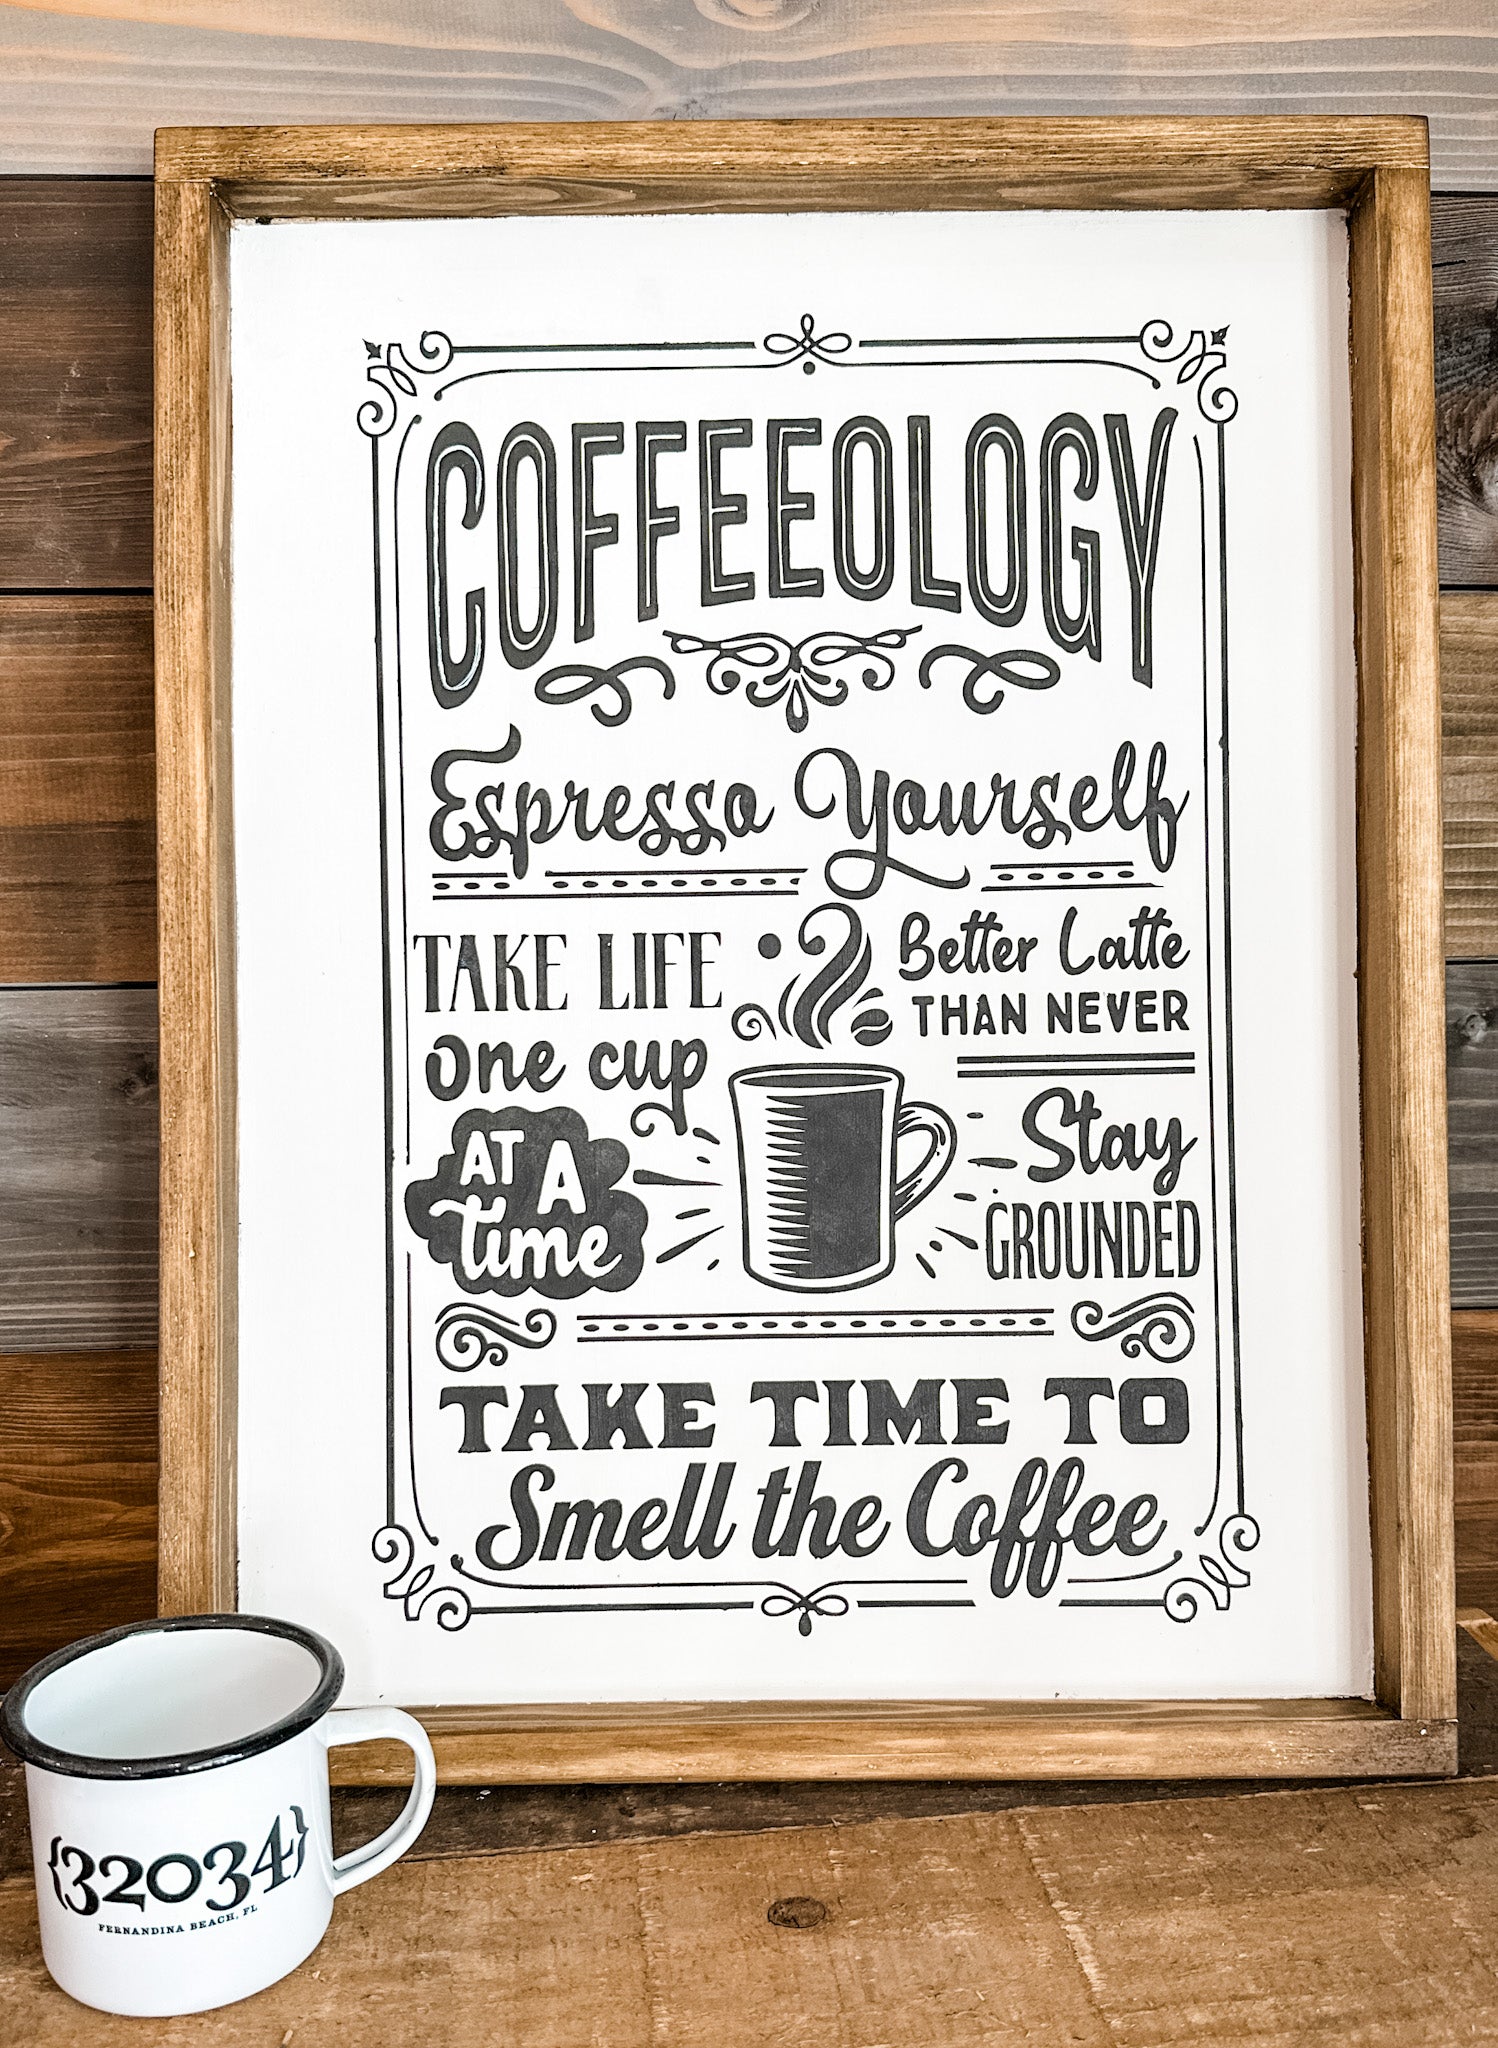 COFFEEOLOGY